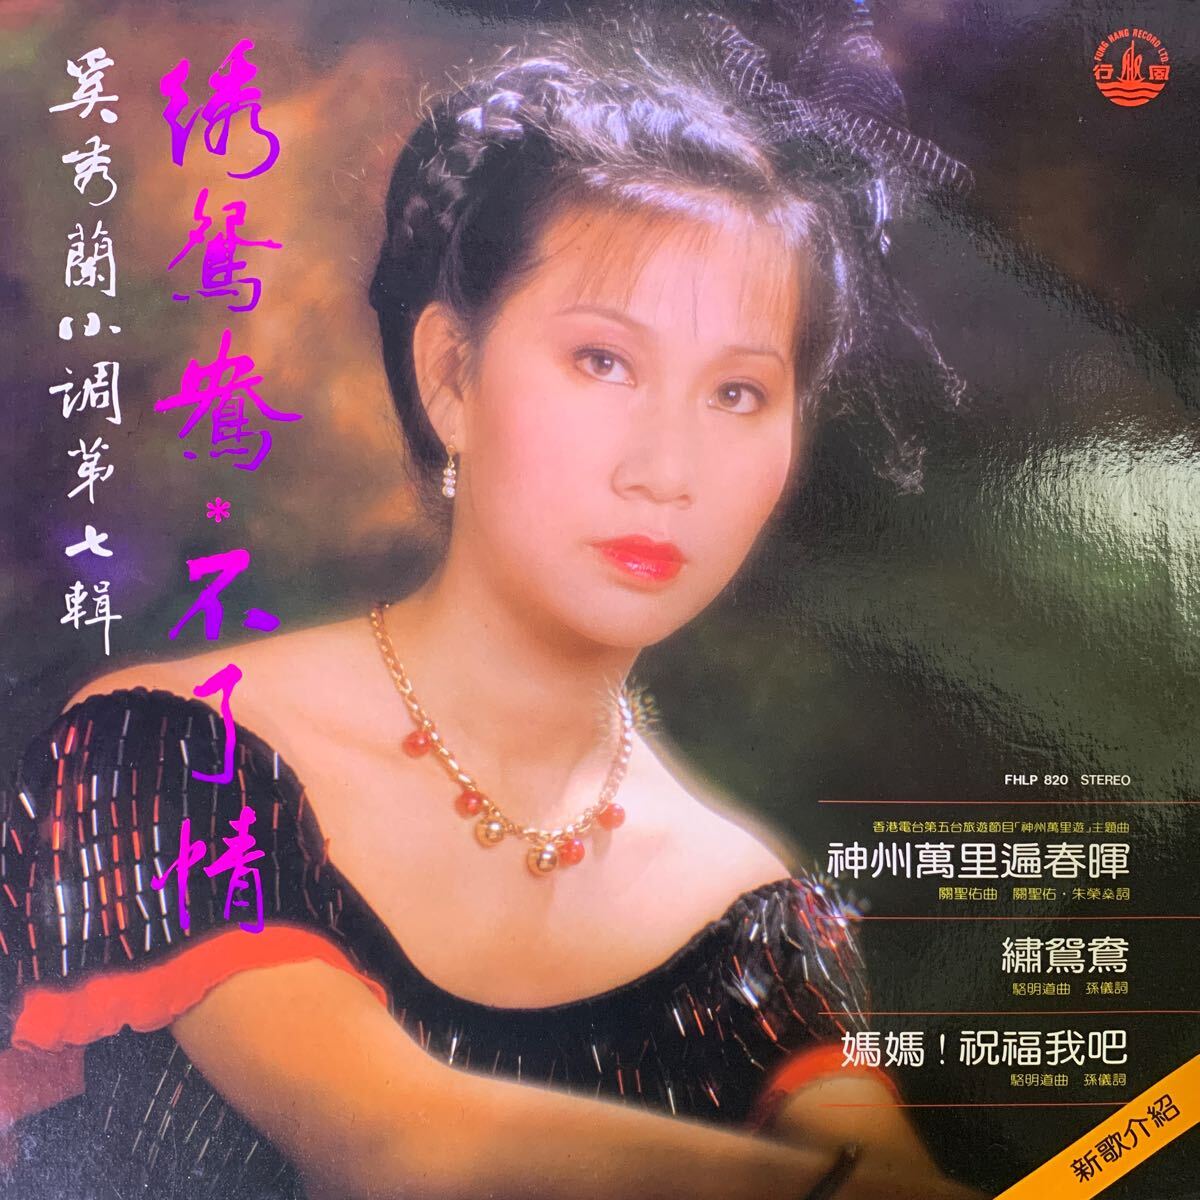 . превосходящий орхидея ... не ..Fung Hang Record FHLP820 запись Vinyl Hong Kong запись Hong Kong Hong Kong 1981 год 